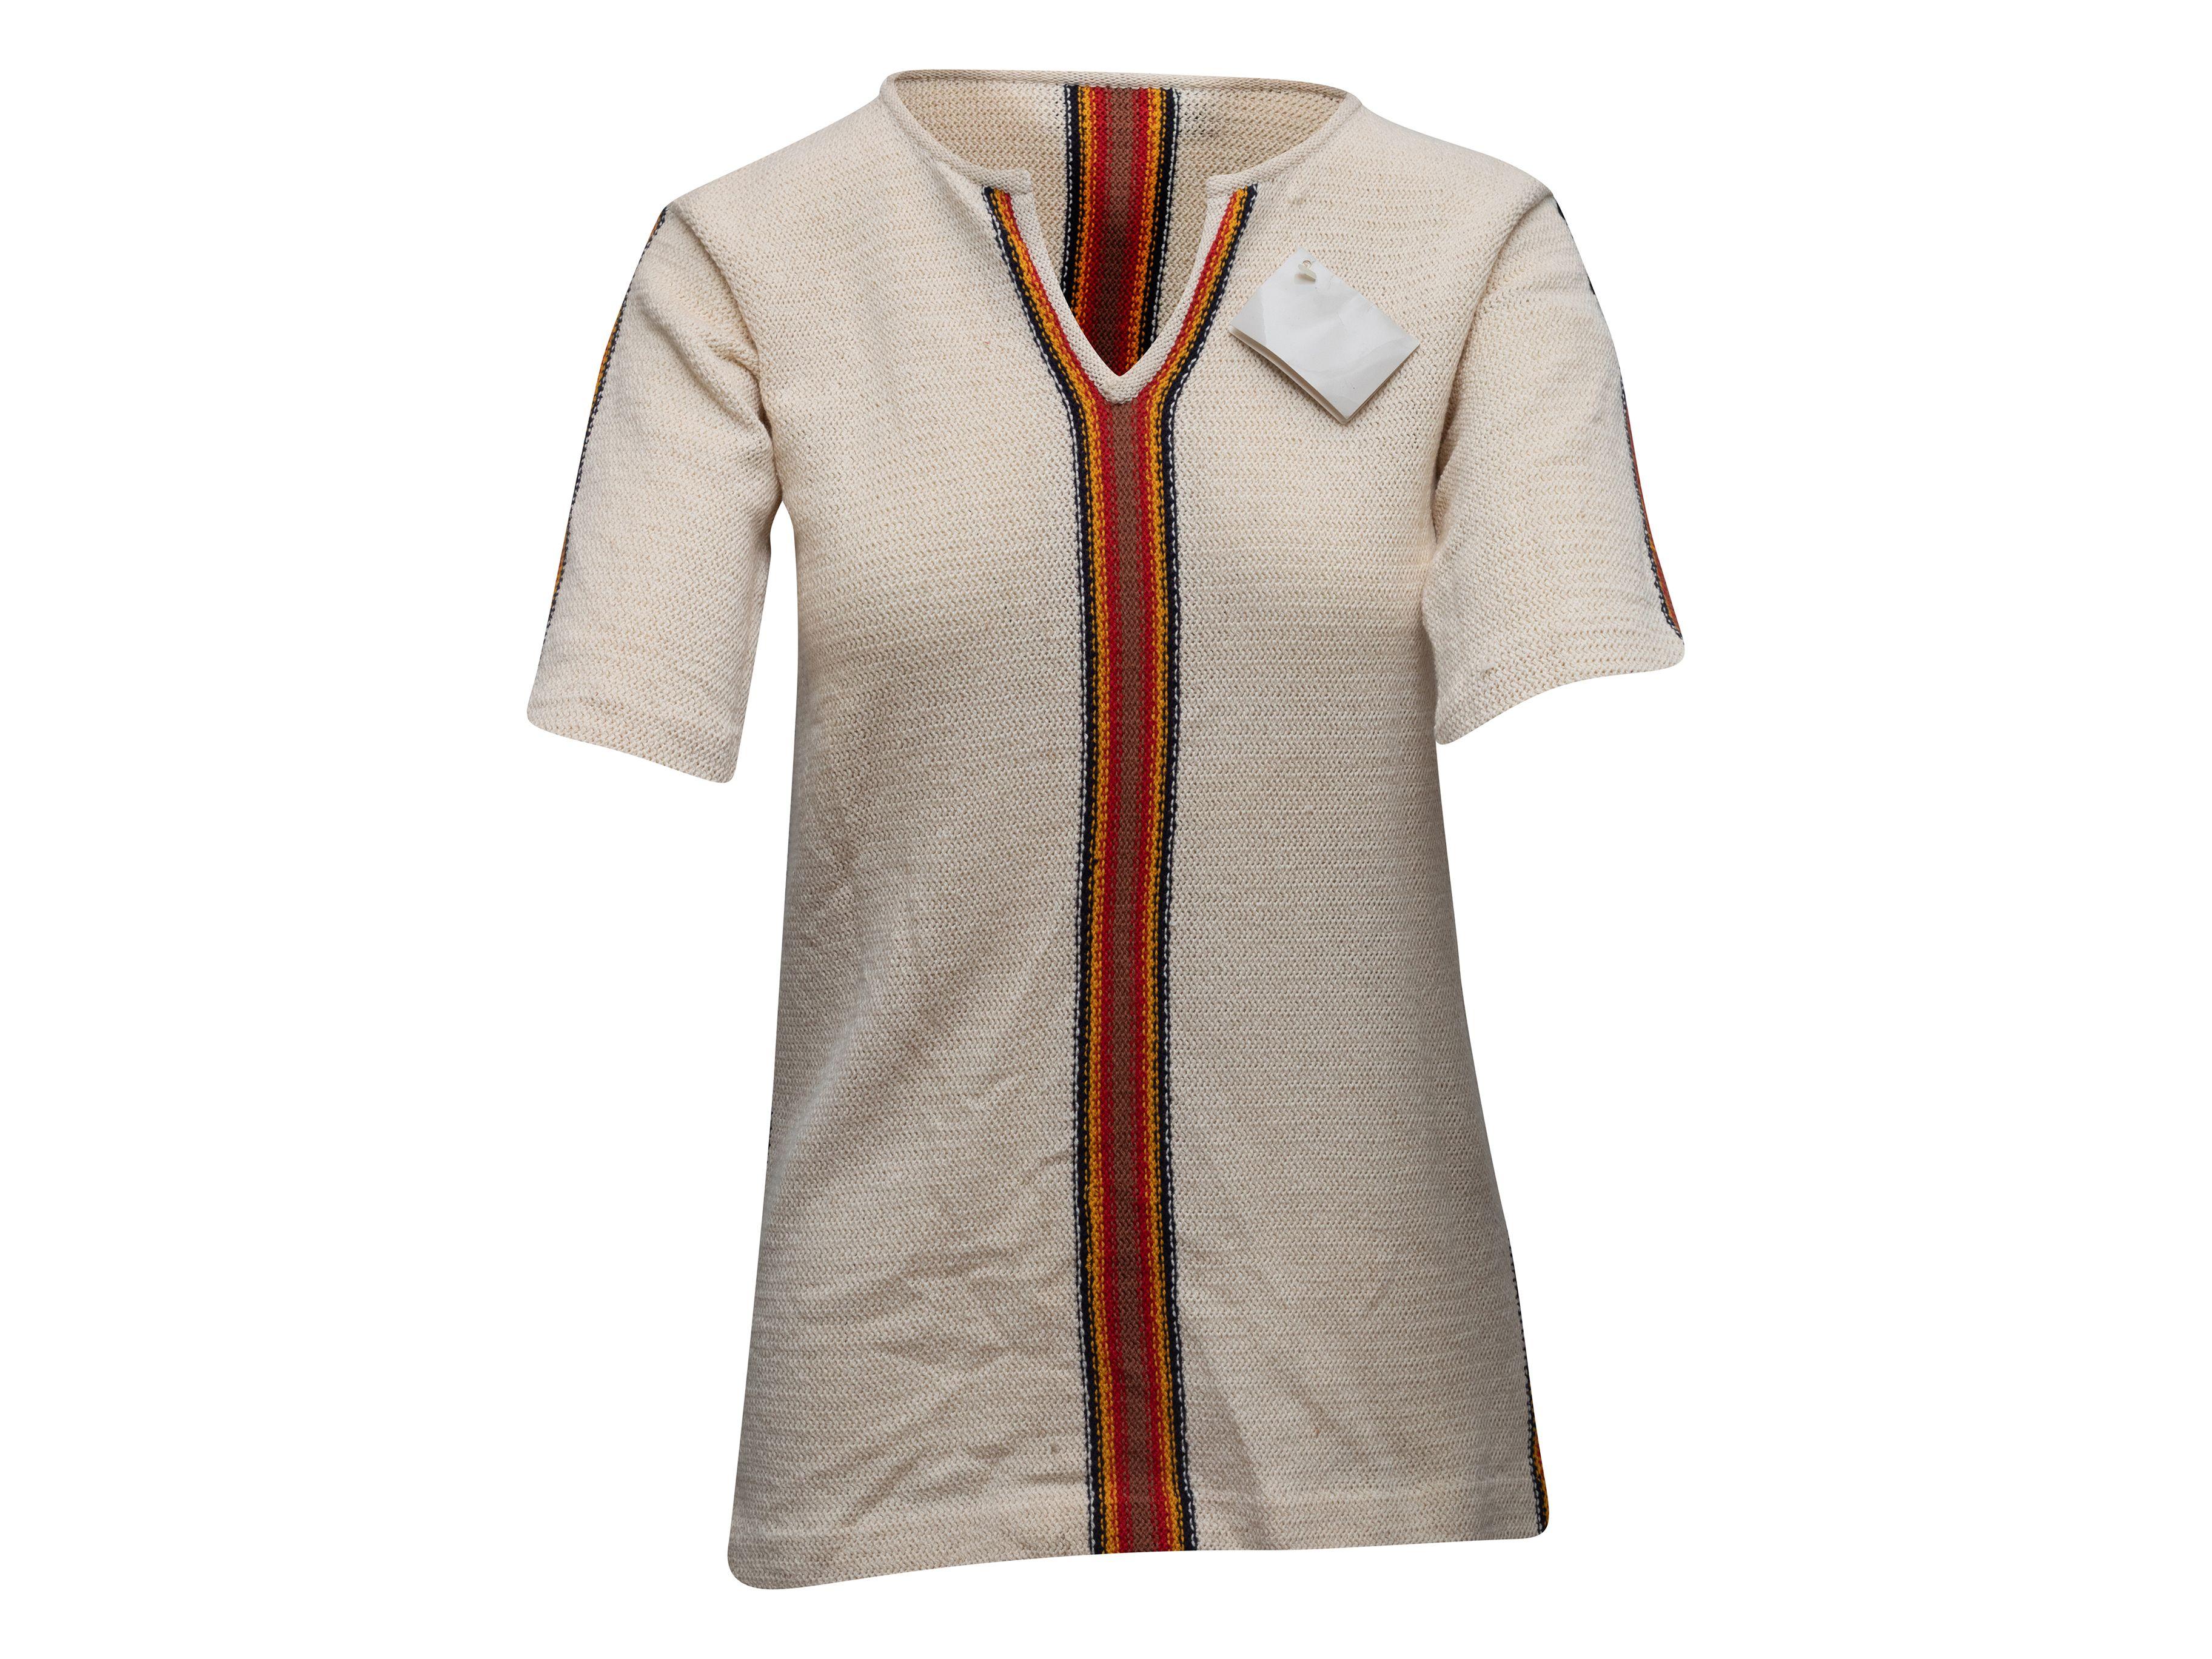 Women's or Men's Pierre Cardin Beige & Multicolor Short Sleeve Top